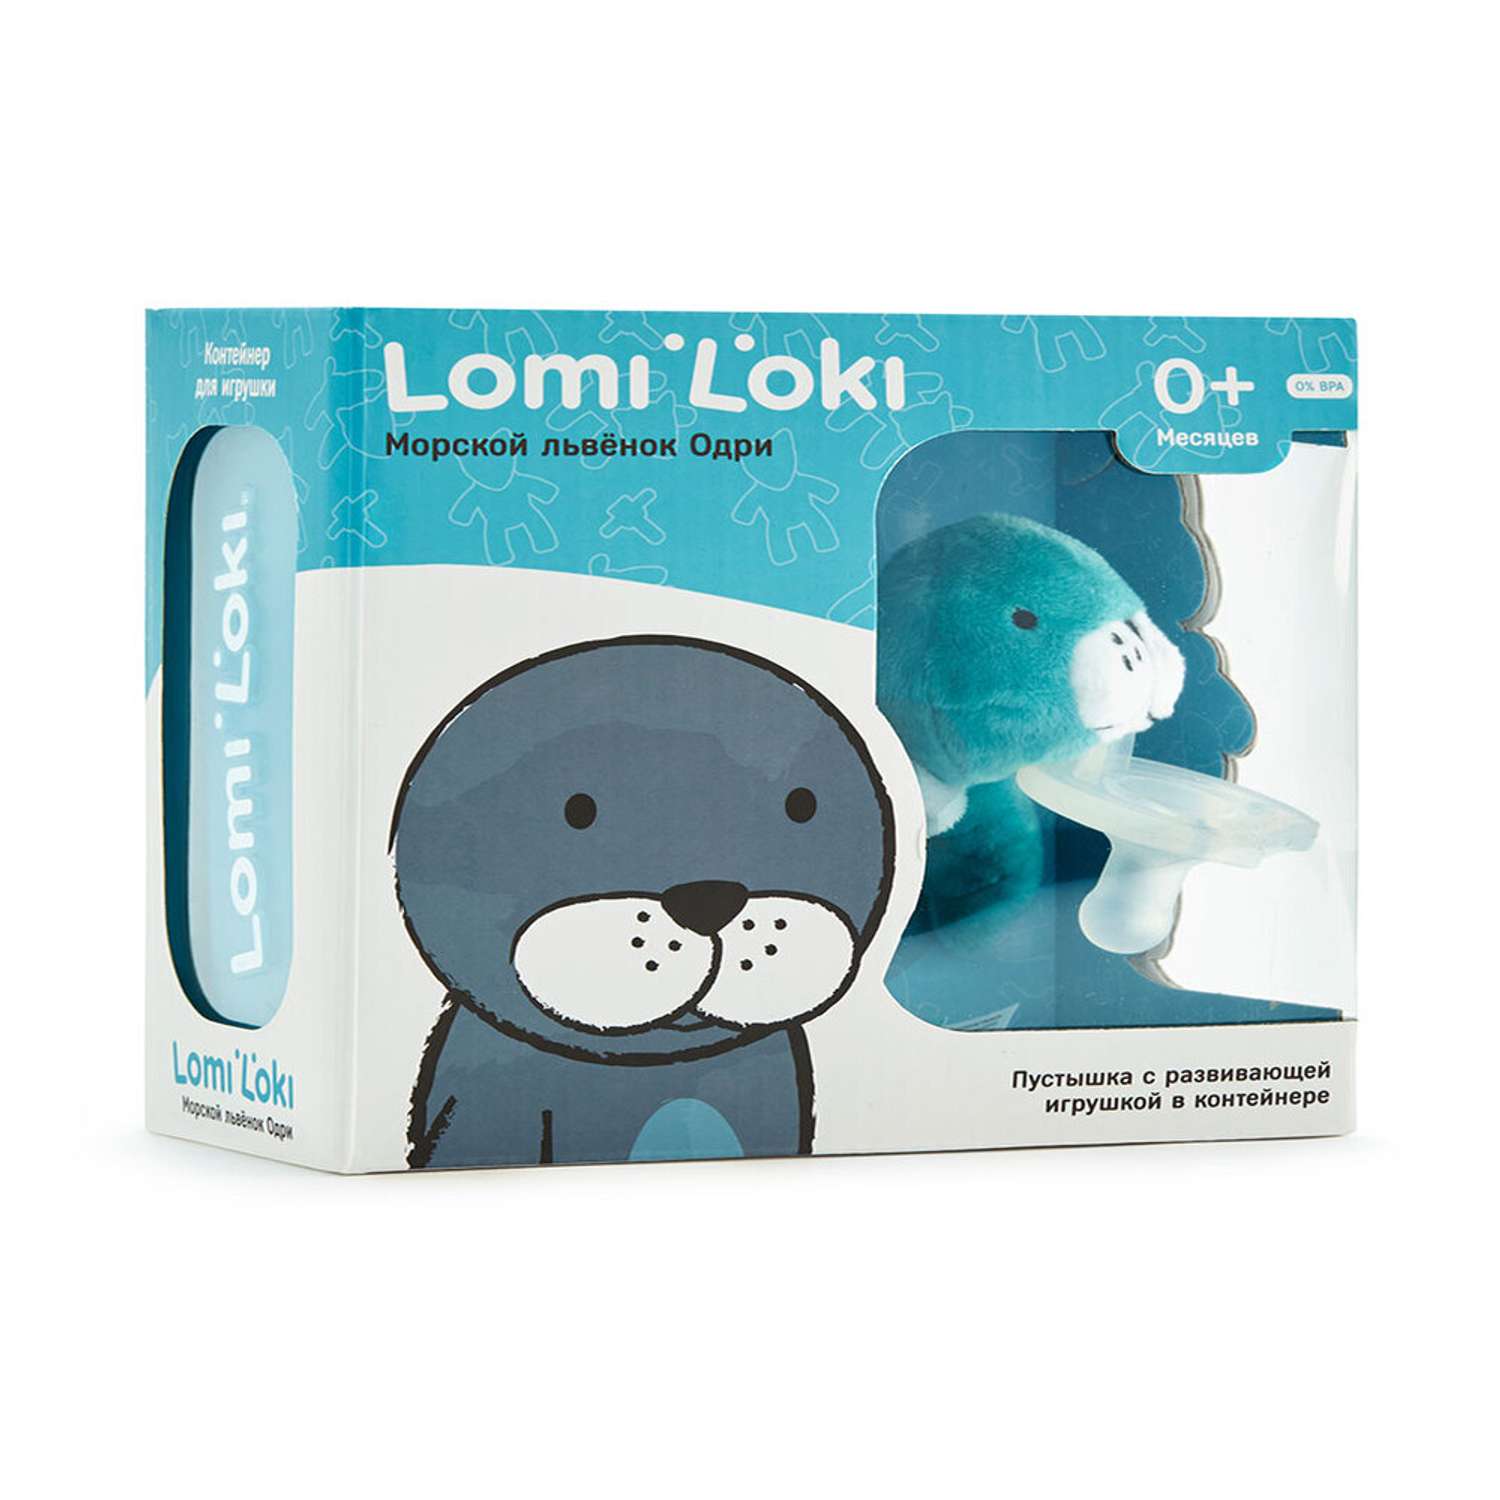 Соска LomiLoki с развивающей игрушкой Морской львенок Одри - фото 1